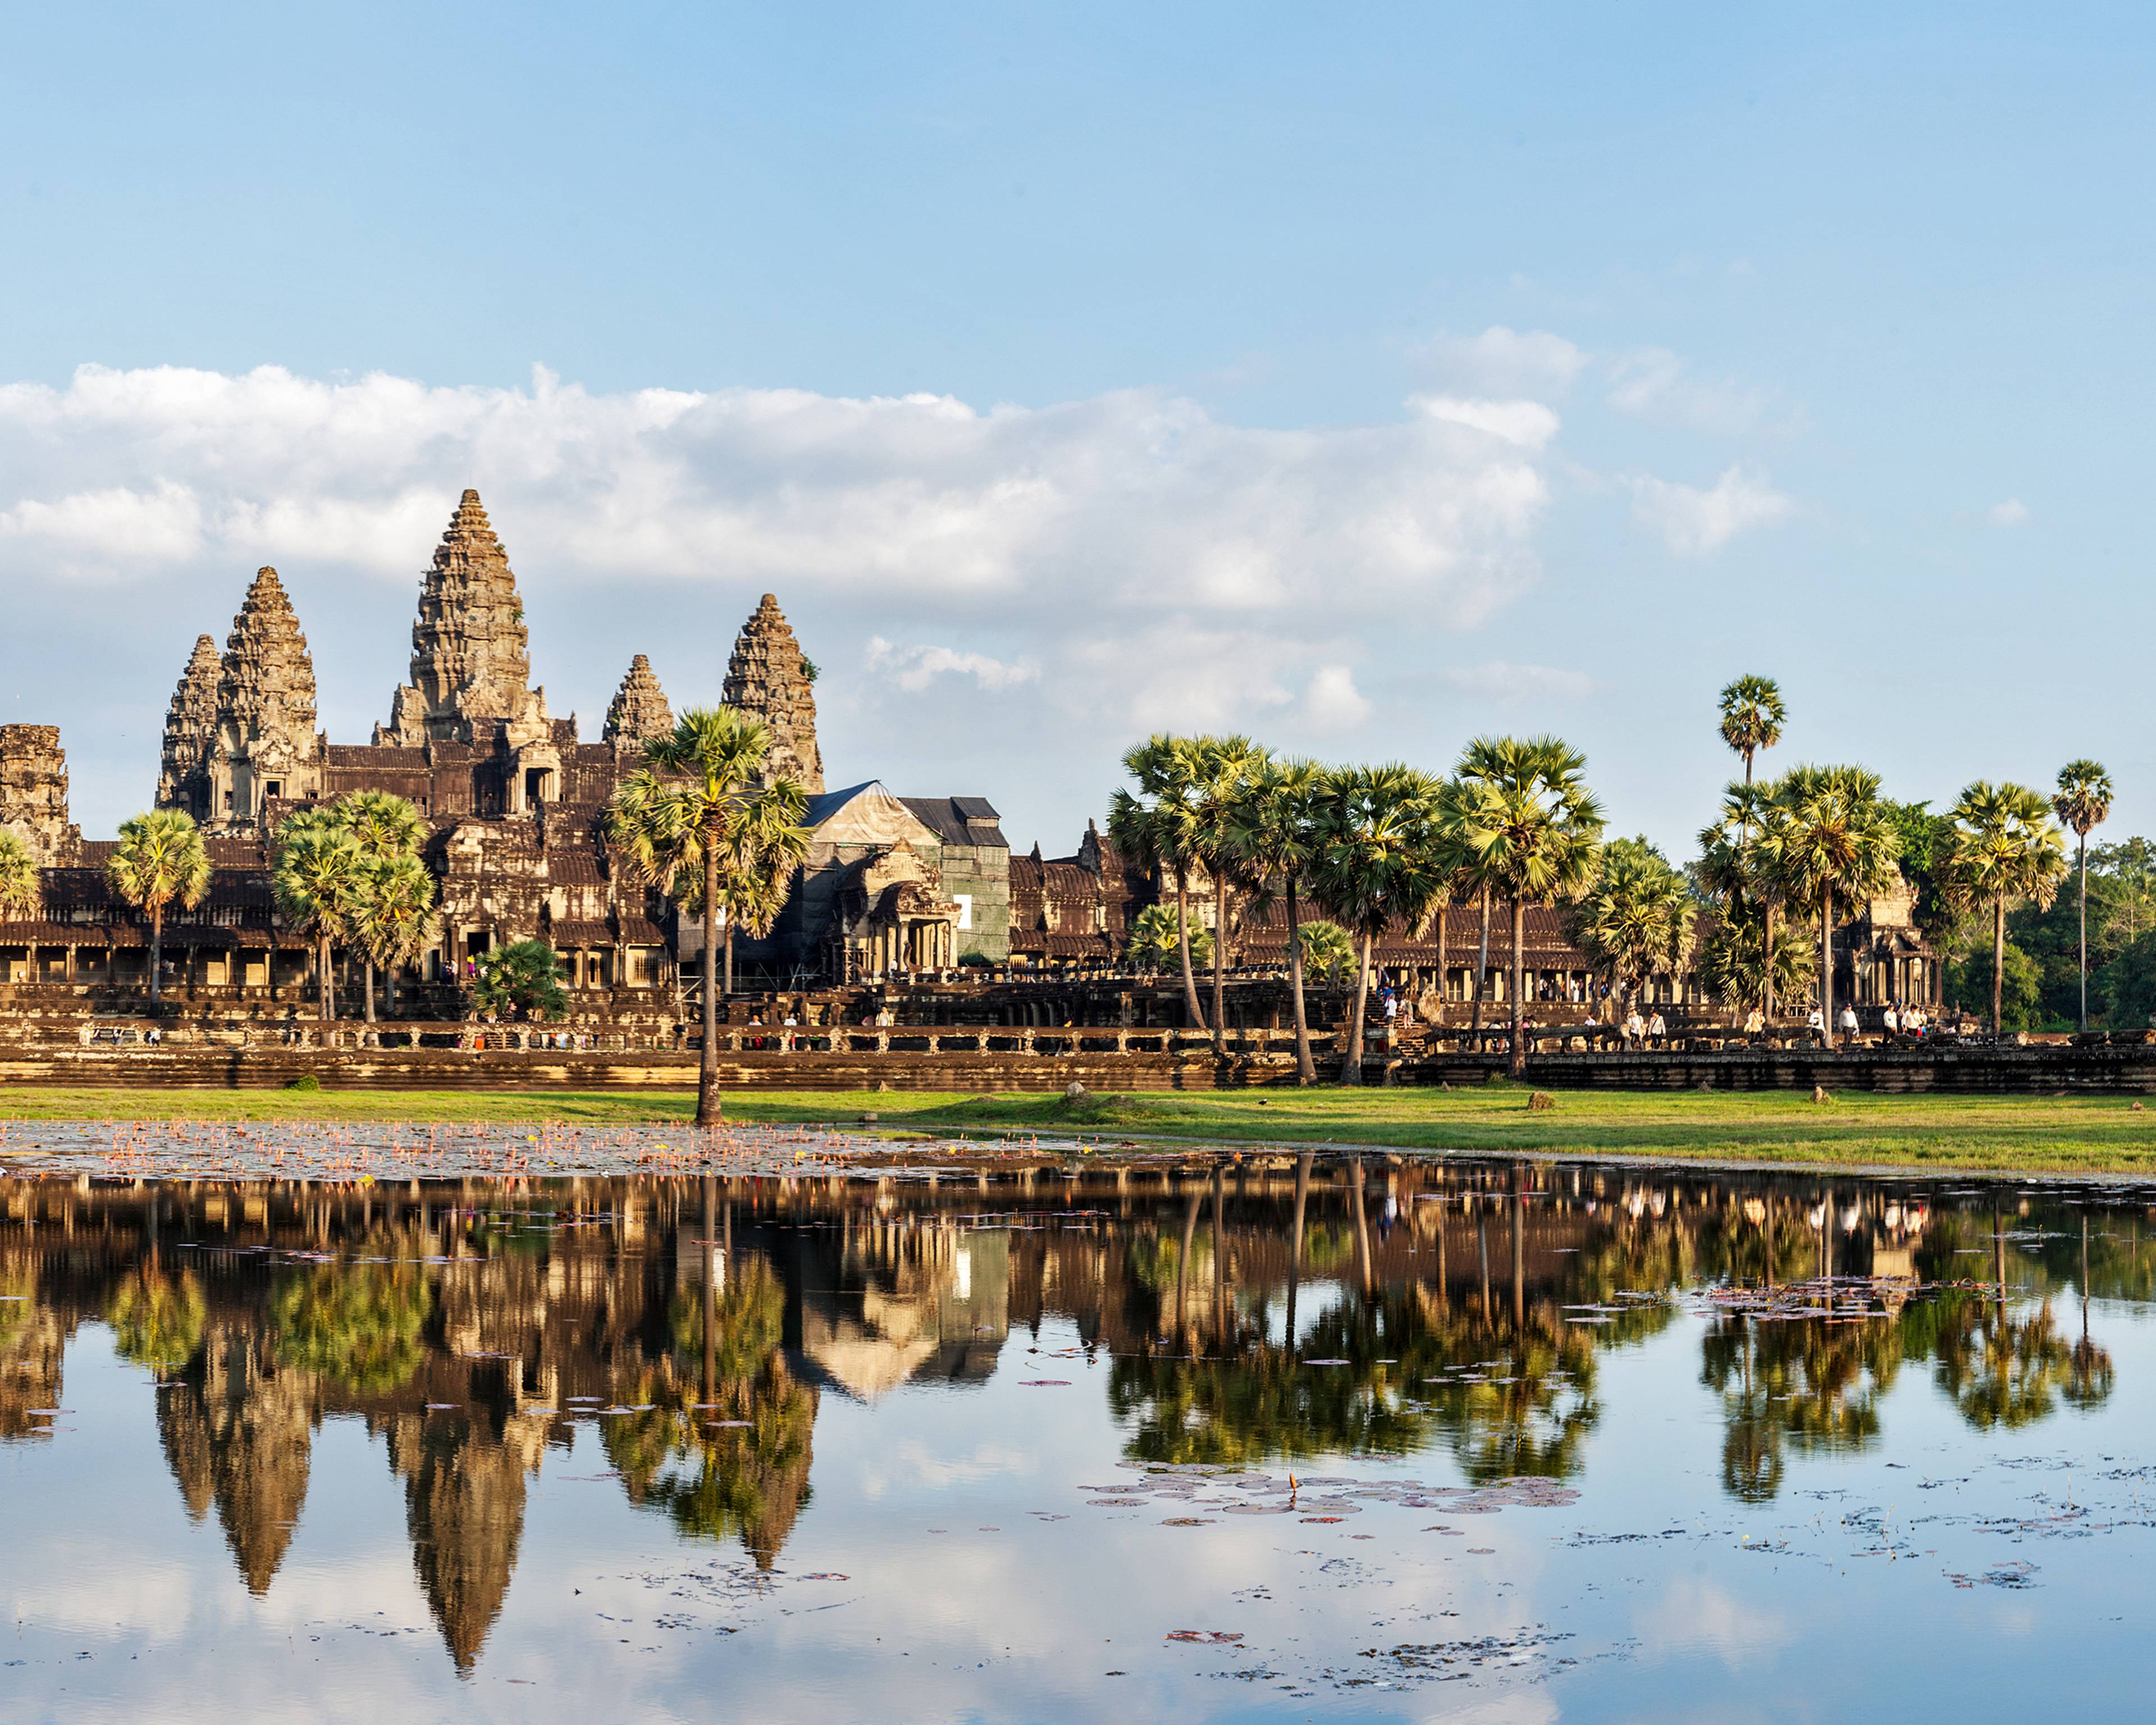 Crea il tuo viaggio in Cambogia in estate, 100% su misura